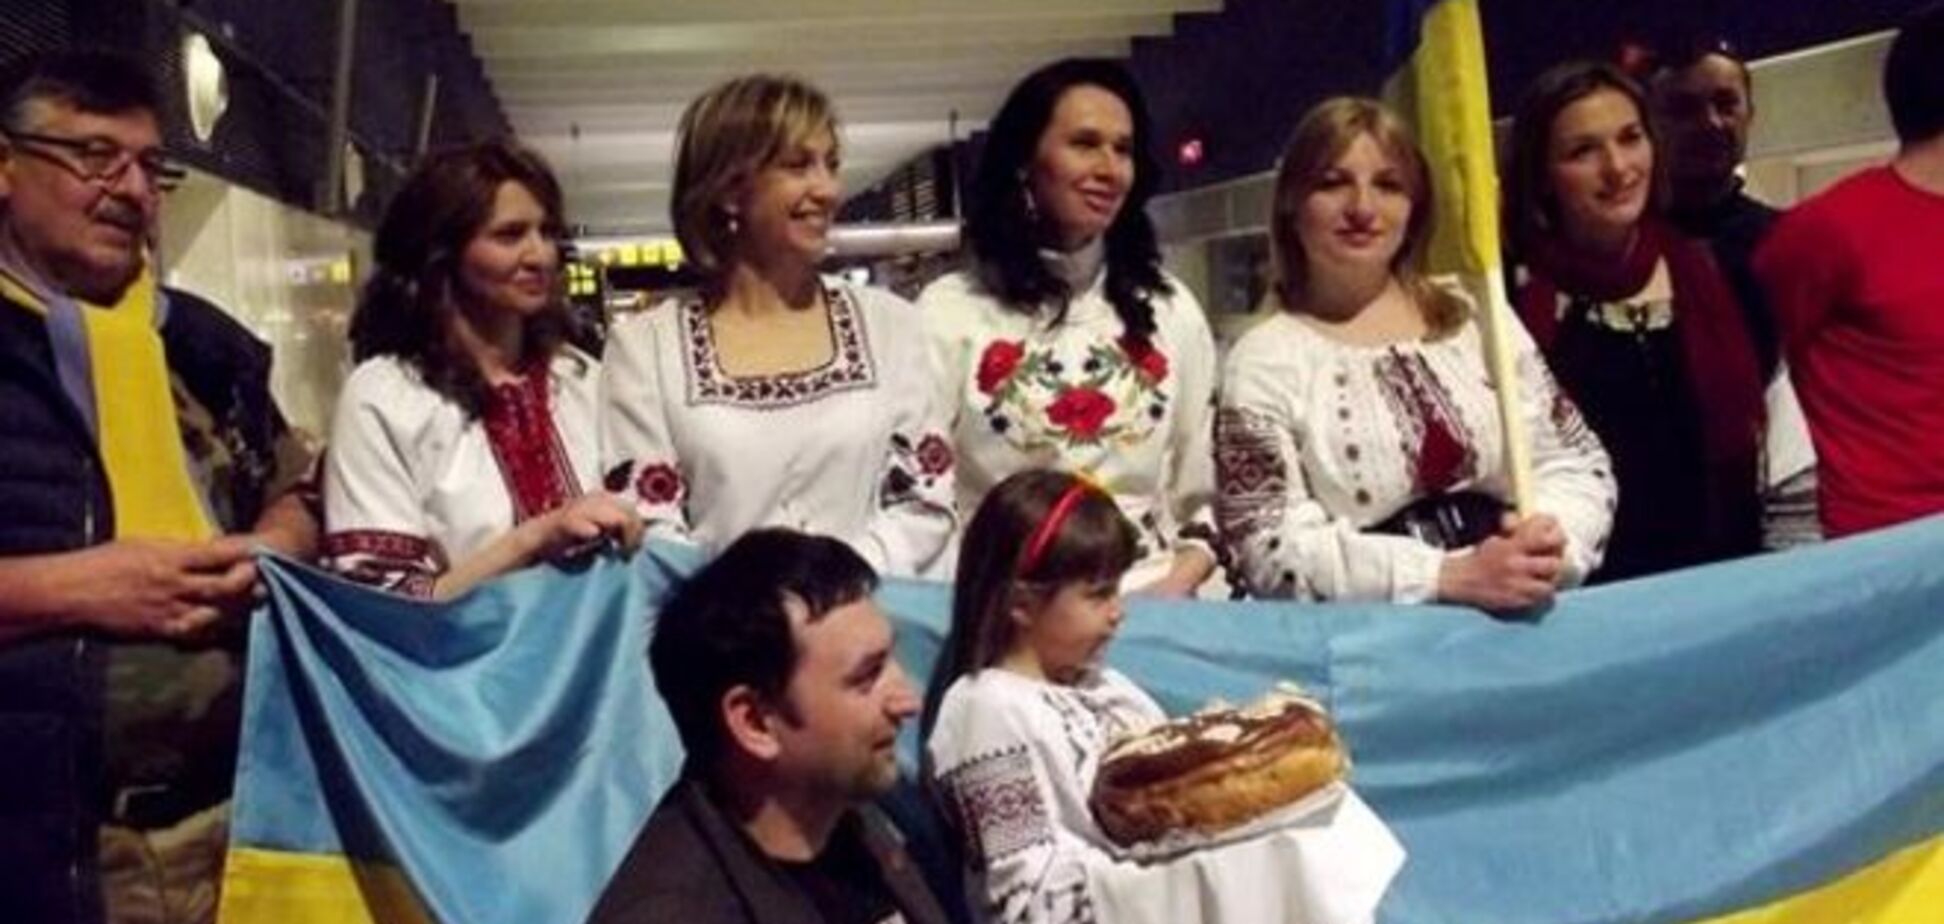 Збірна України отримала в Іспанії несподіваний сюрприз: фото презенту